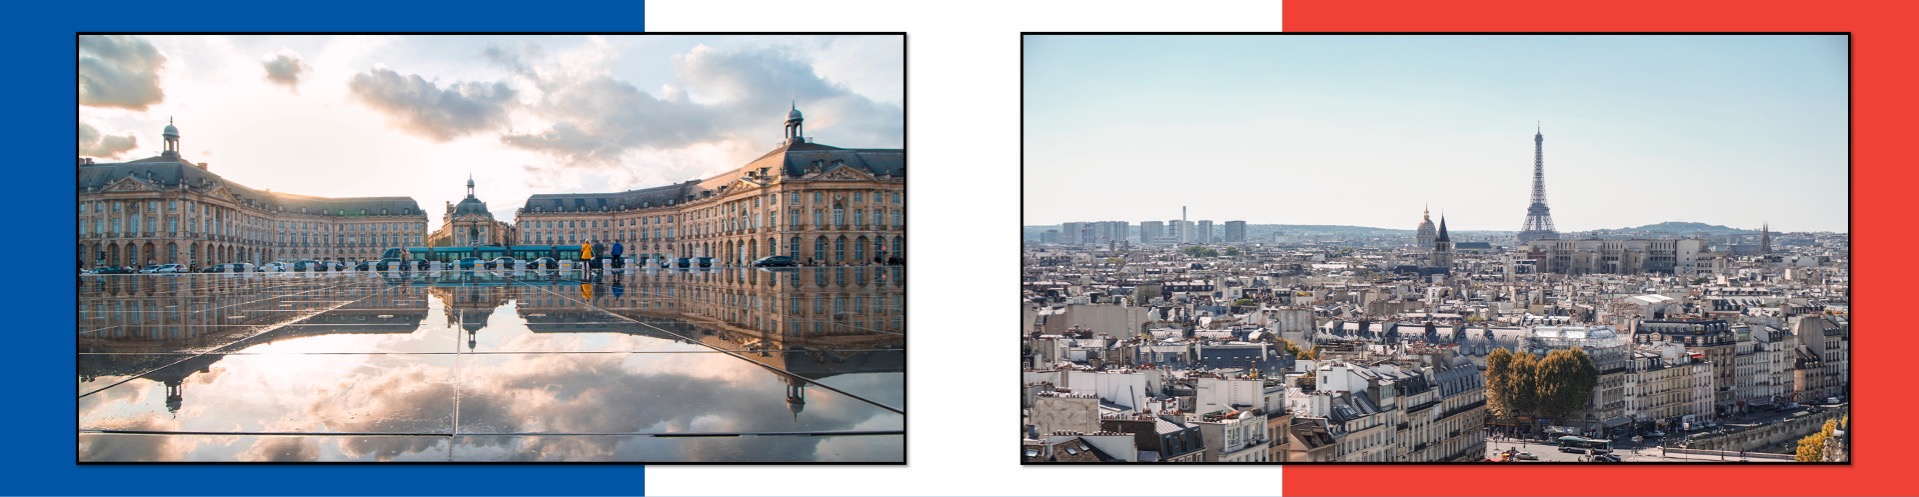 Bordeaux/Paris Study Abroad